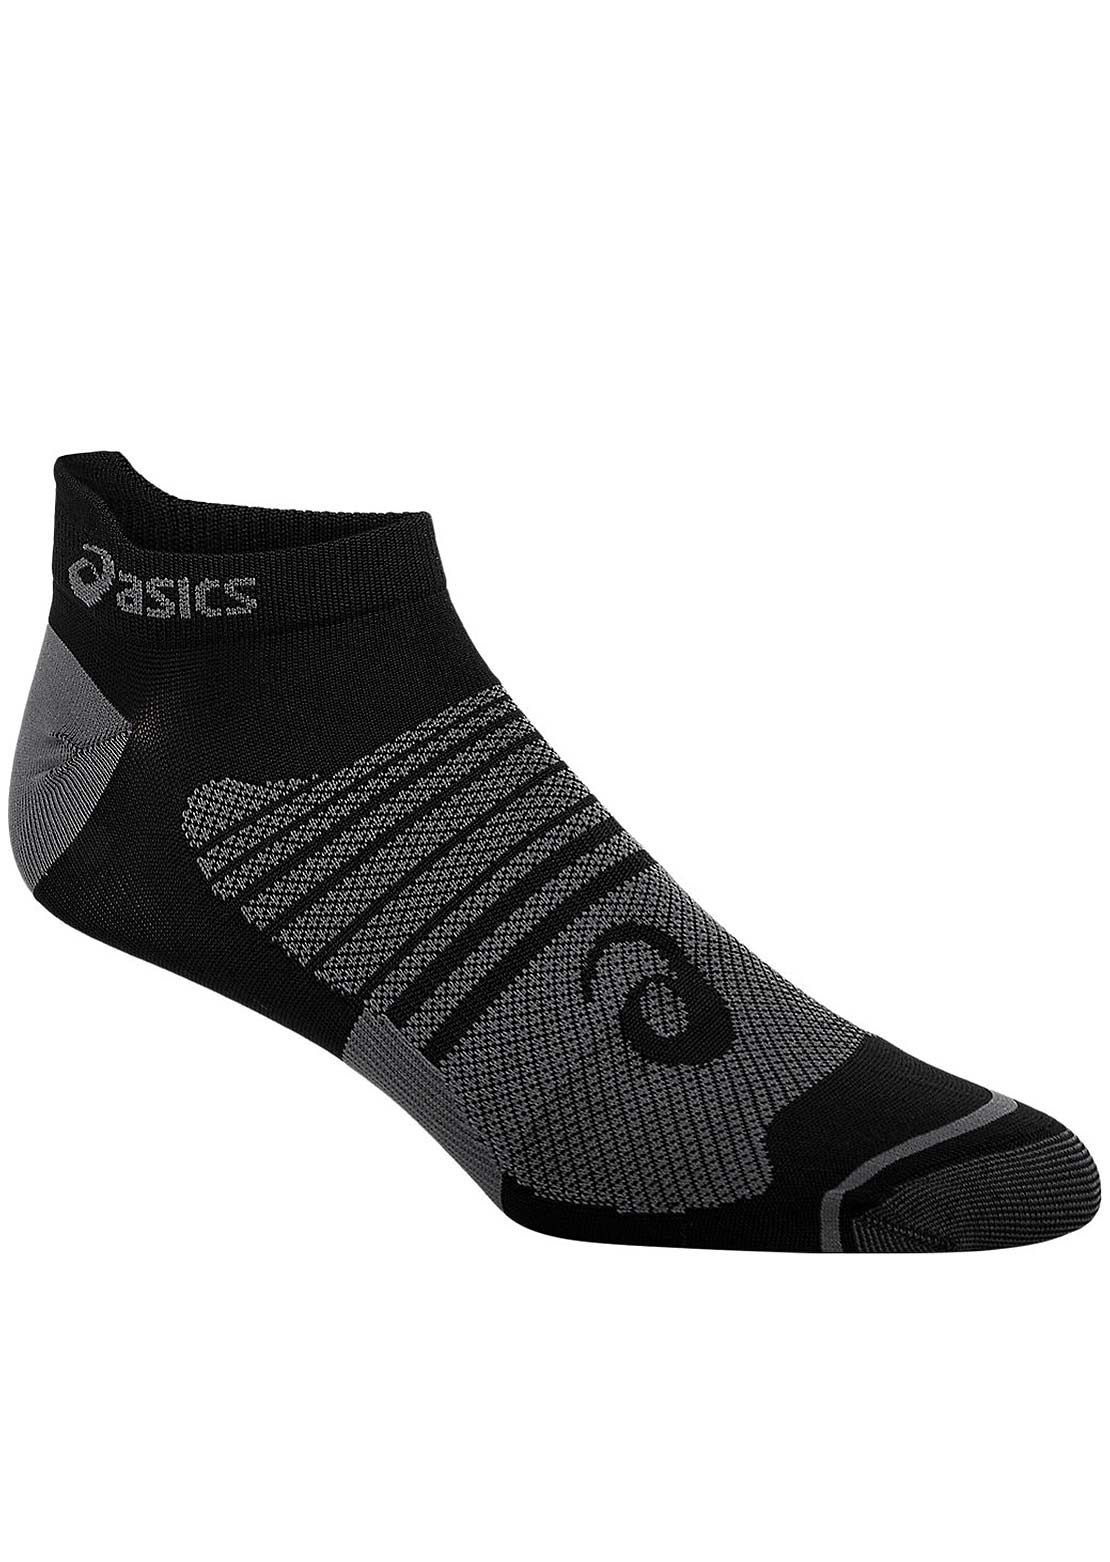 Asics Men&#39;s Quick Lyte Plus 3 Pack Socks Performance Black